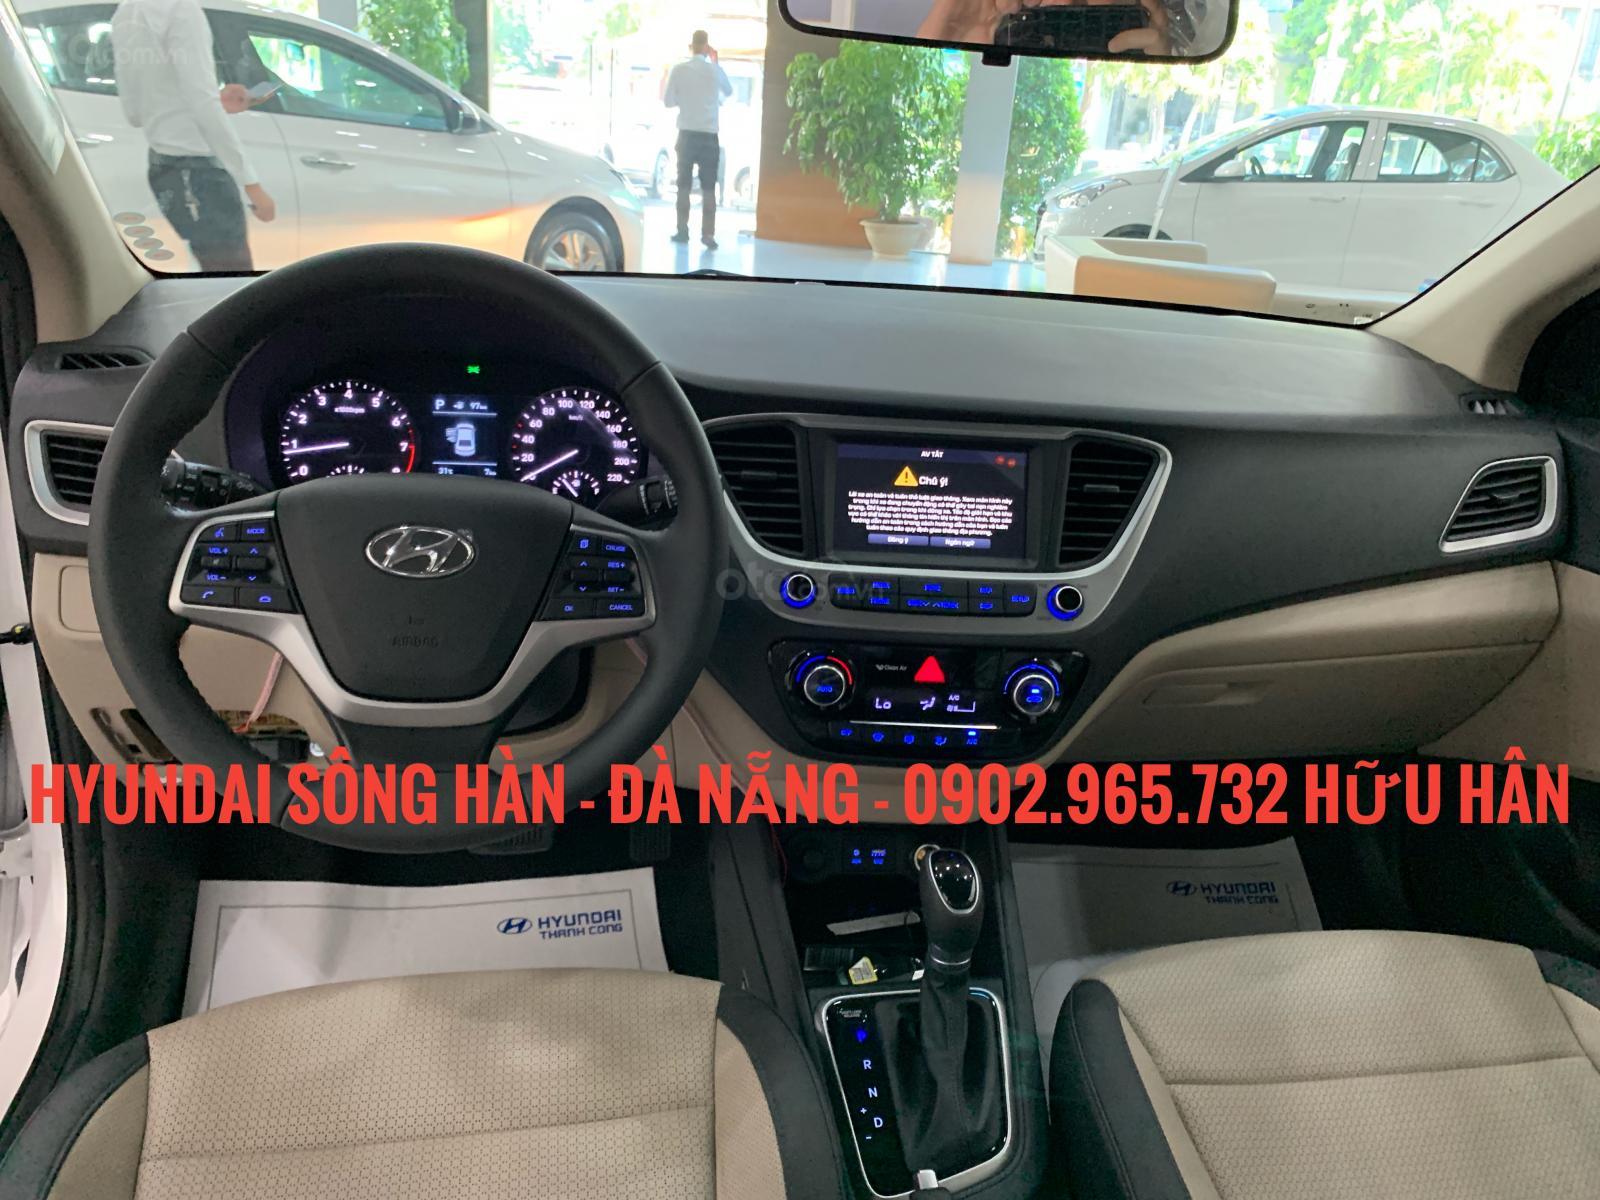 Hyundai Accent 2019 - Hyundai Sông Hàn Đà Nẵng bán Hyundai Accent 2019, LH : Hữu Hân 0902 965 732